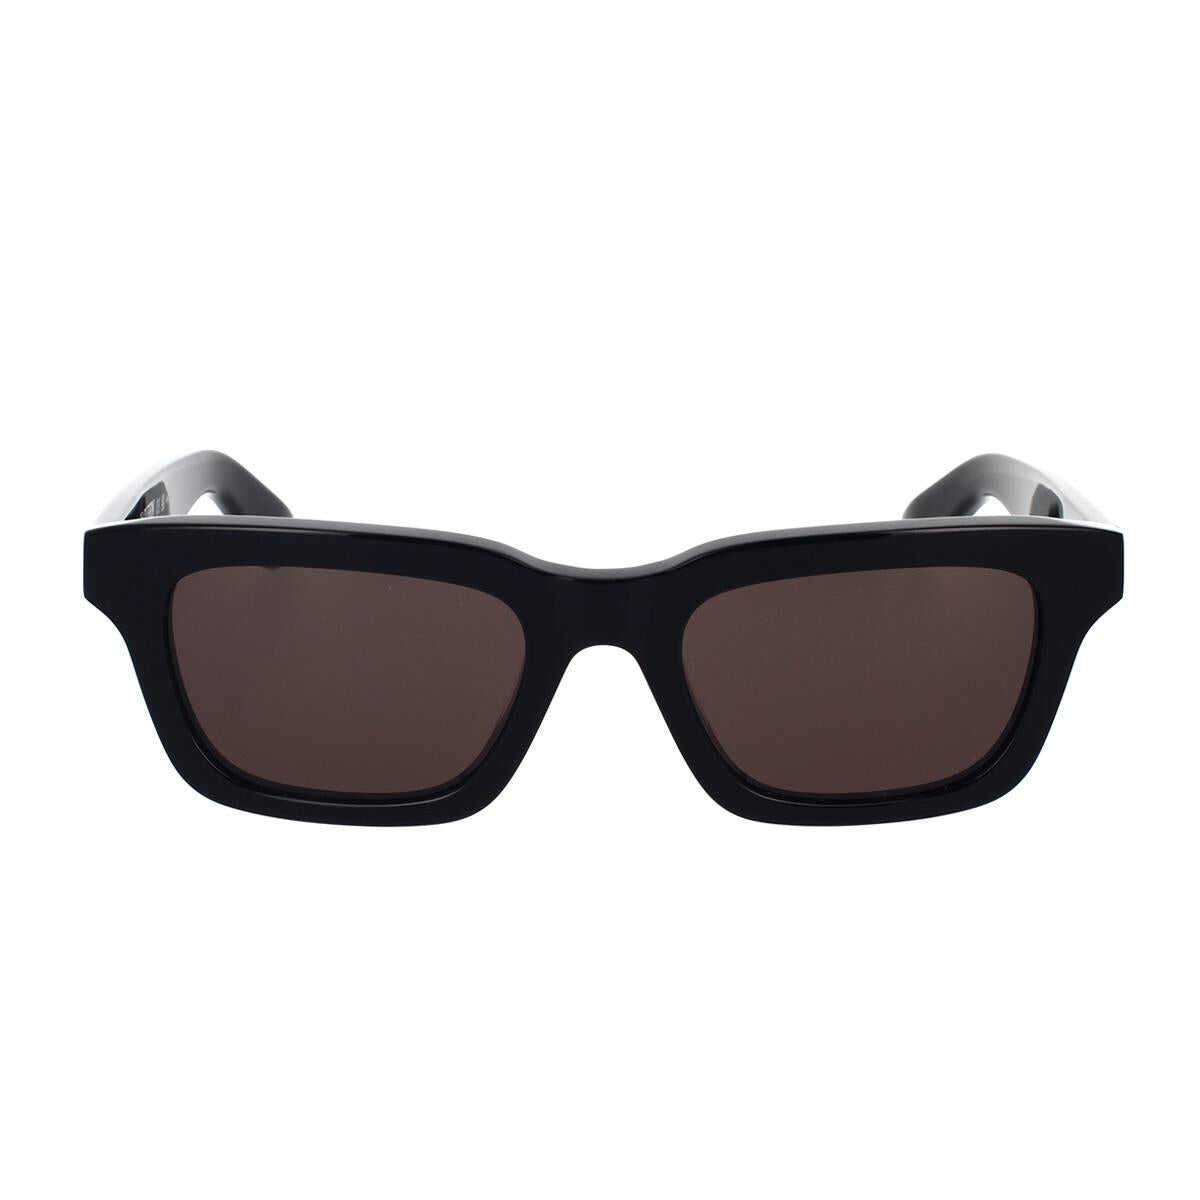 Alexander McQueen ALEXANDER MCQUEEN Sunglasses Black